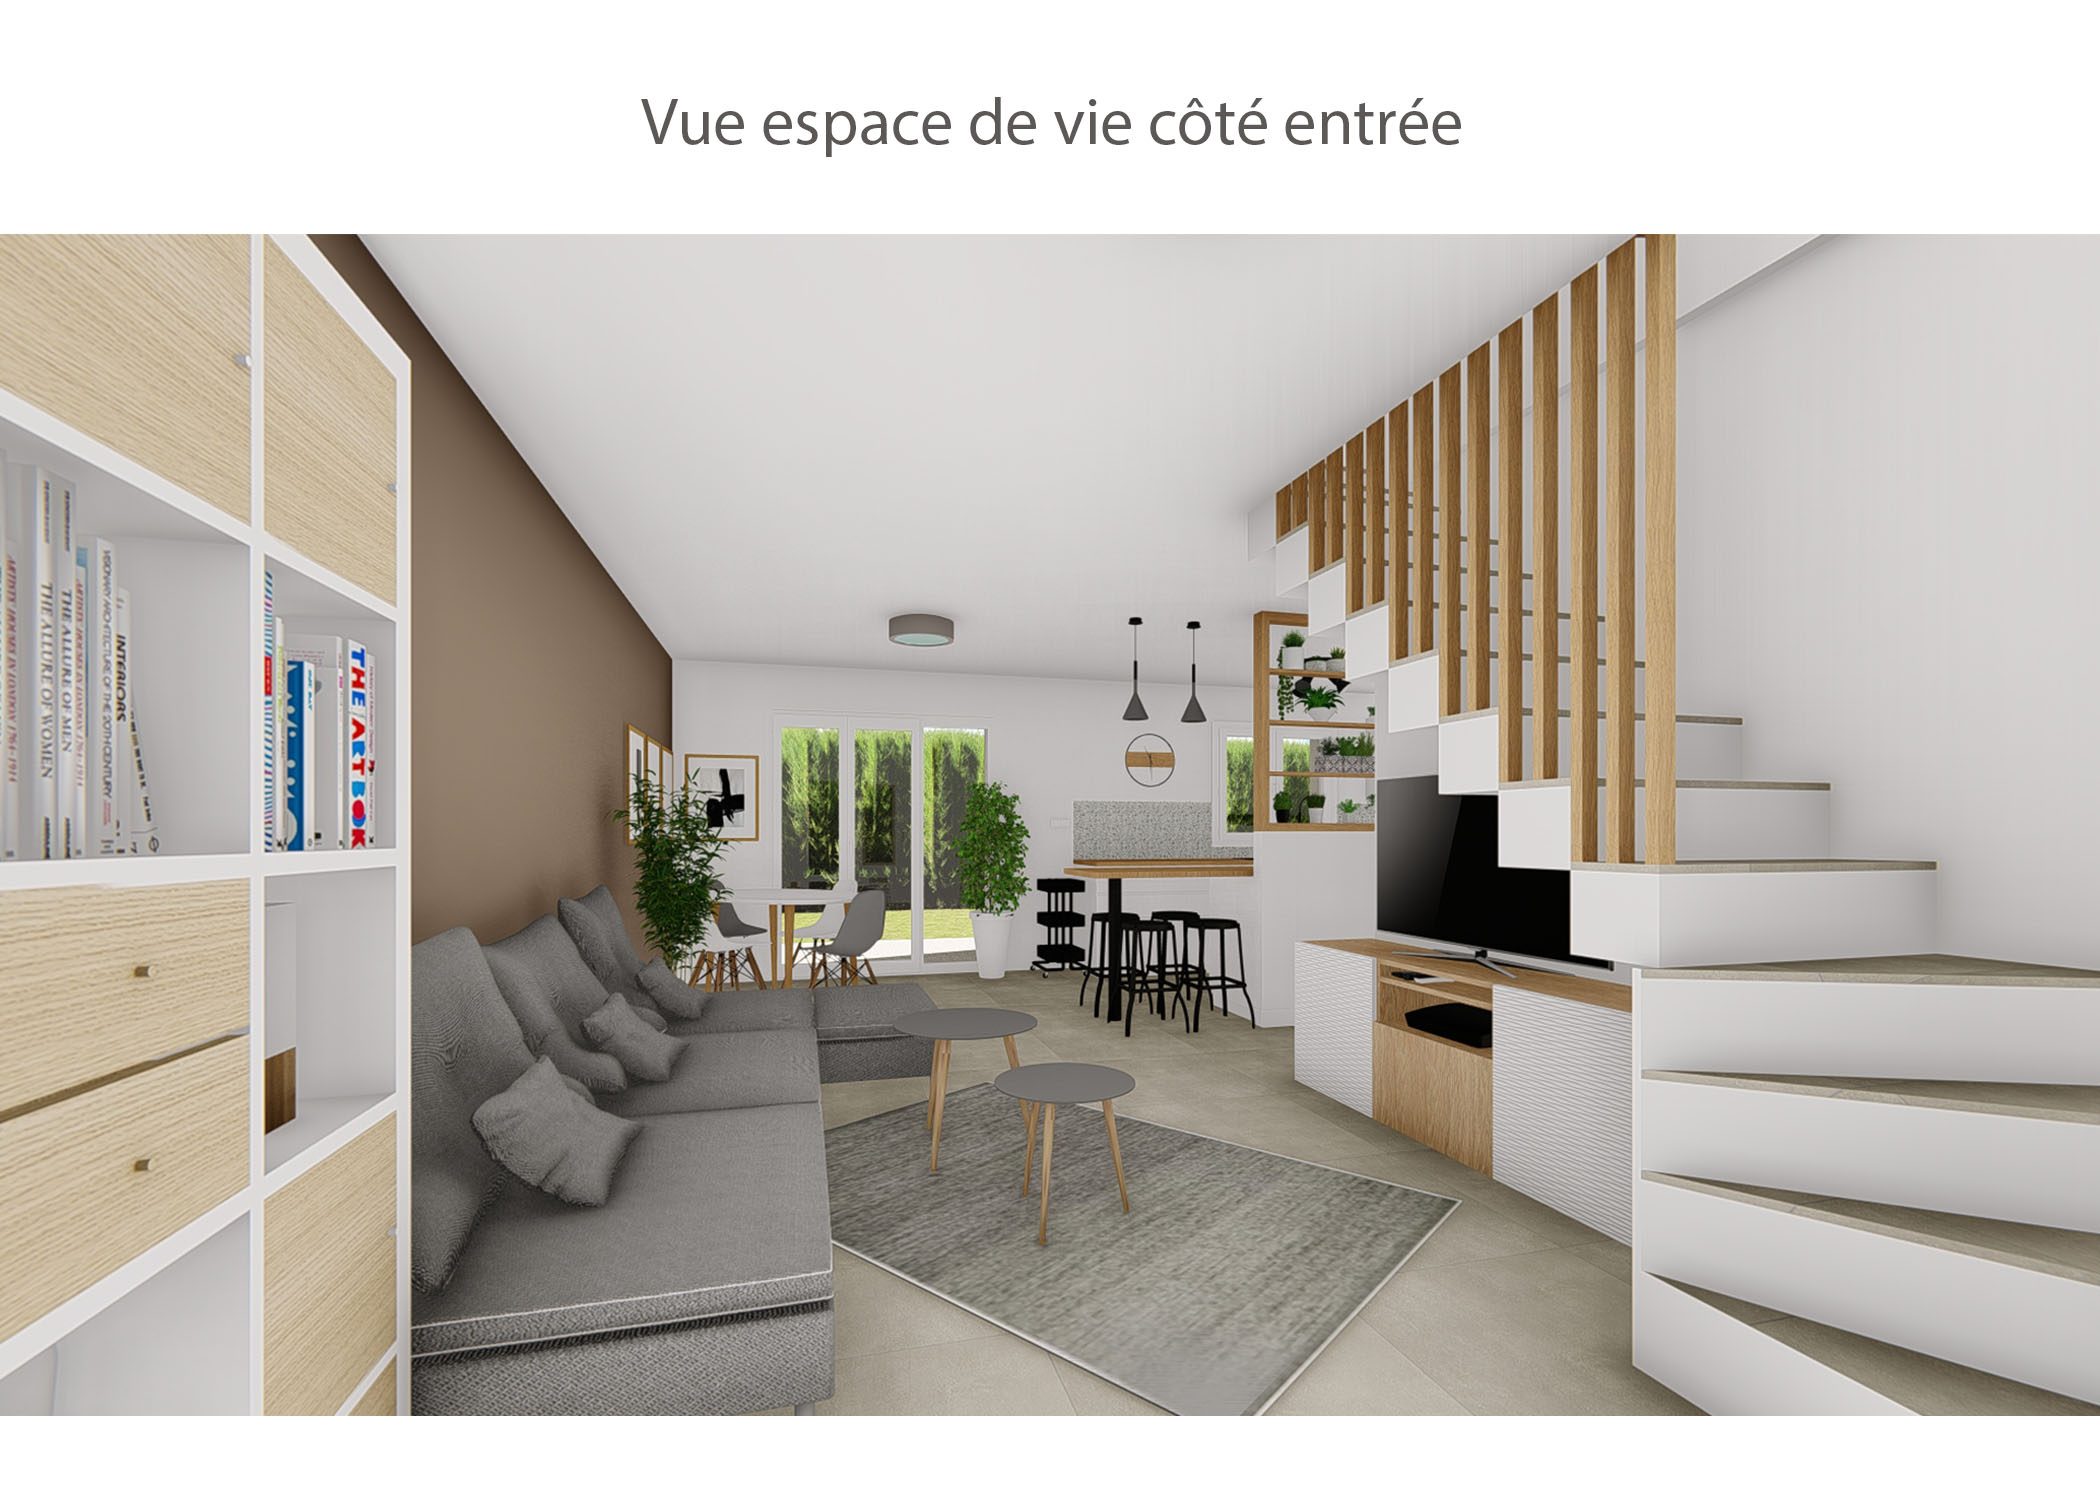 amenagement-decoration-espace de vie maison meyreuil-vue cote entree-dekho design